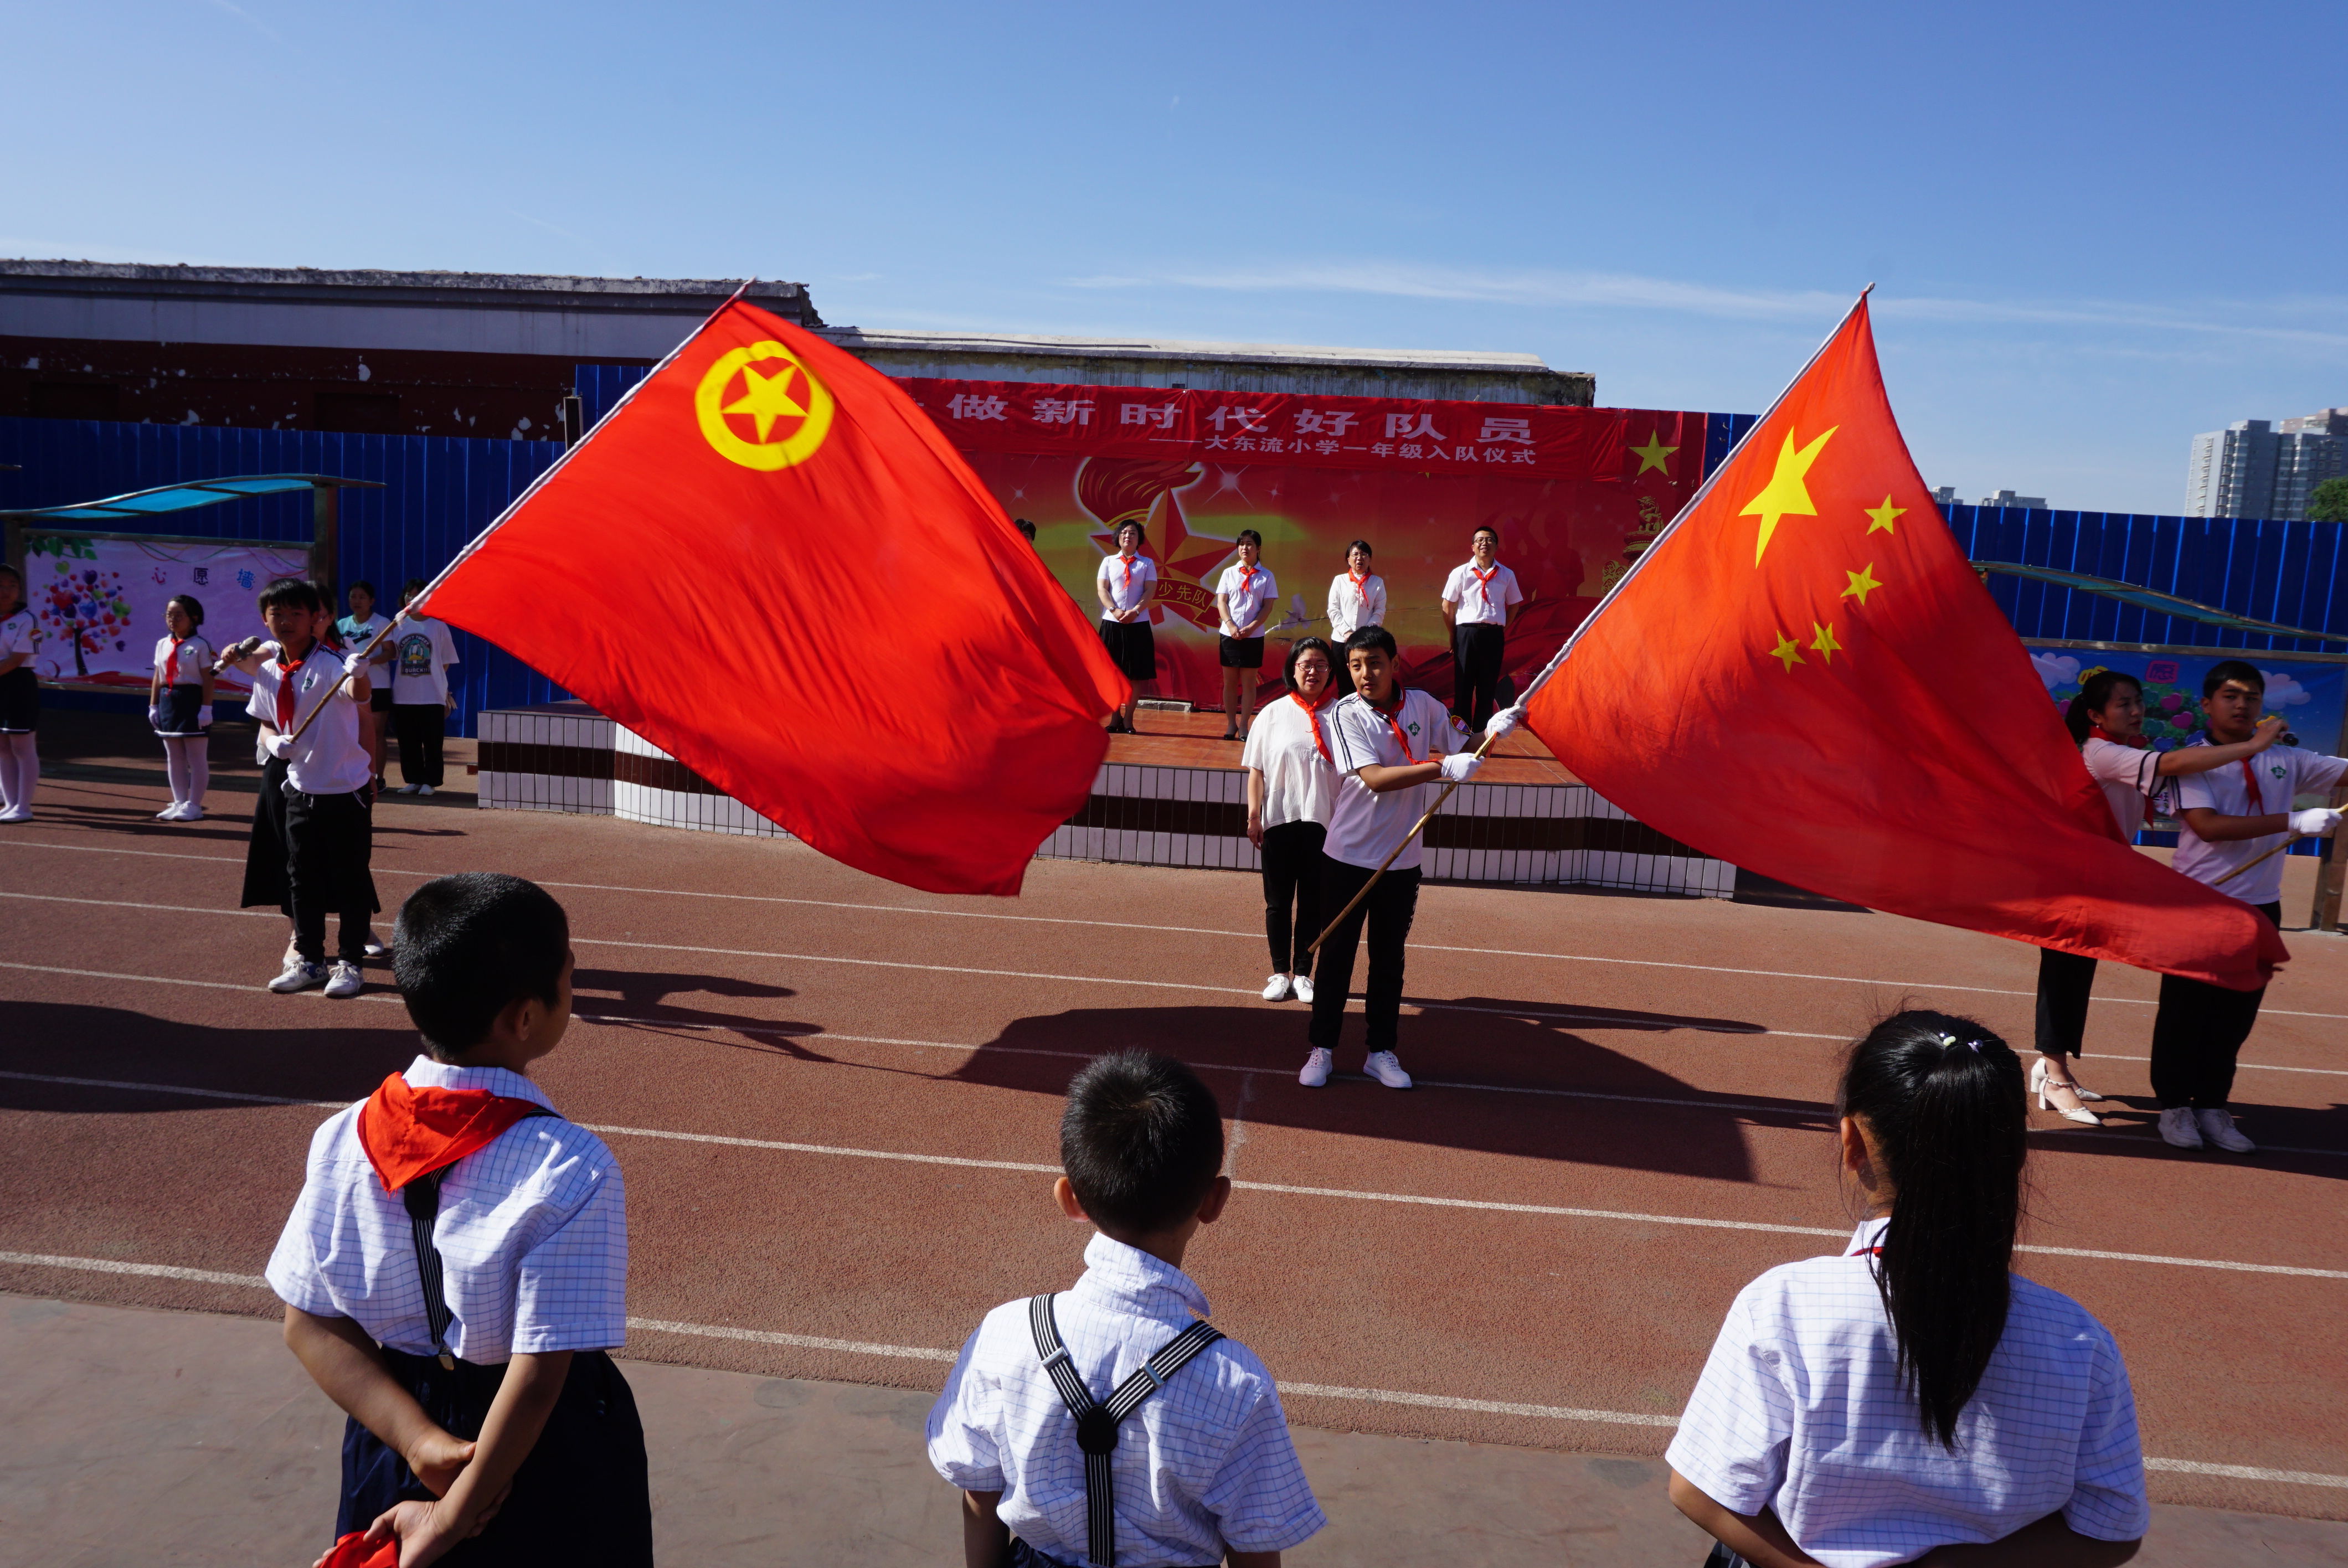 学校四位教师分别将党旗,国旗,团旗,队旗授于少先队员手中,四面红色